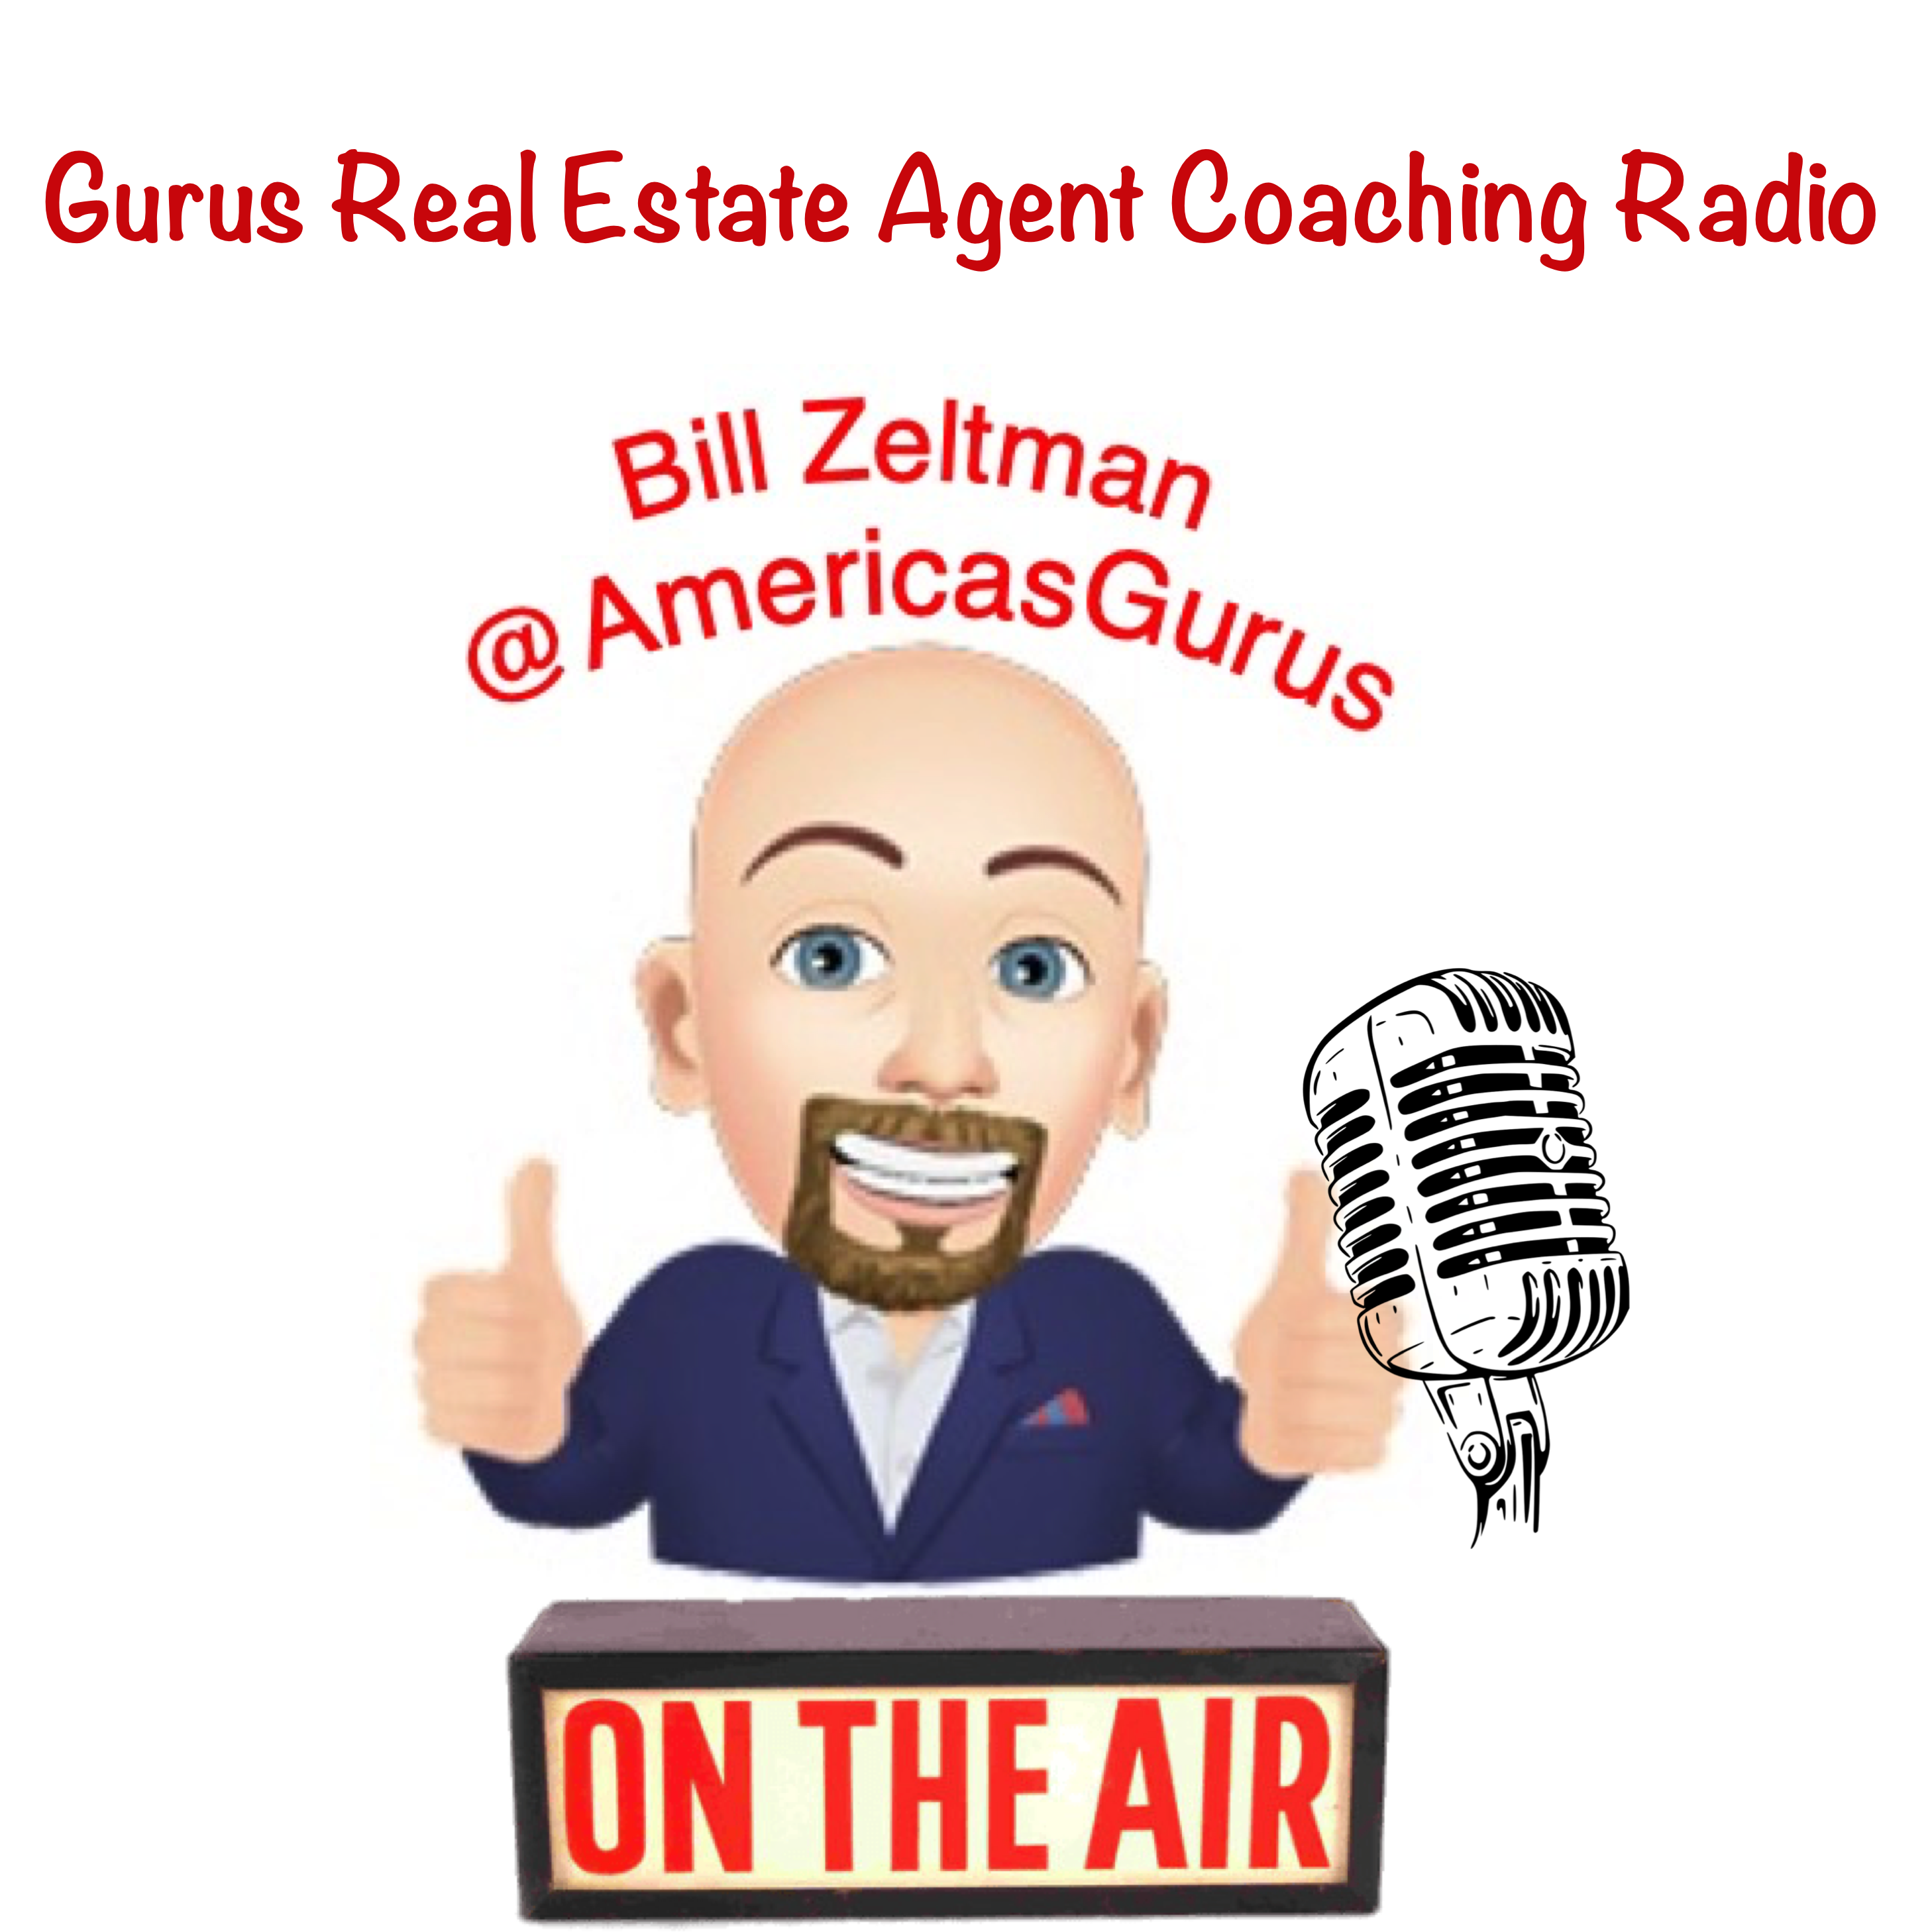 Gurus Real Estate Agent Coaching Radio